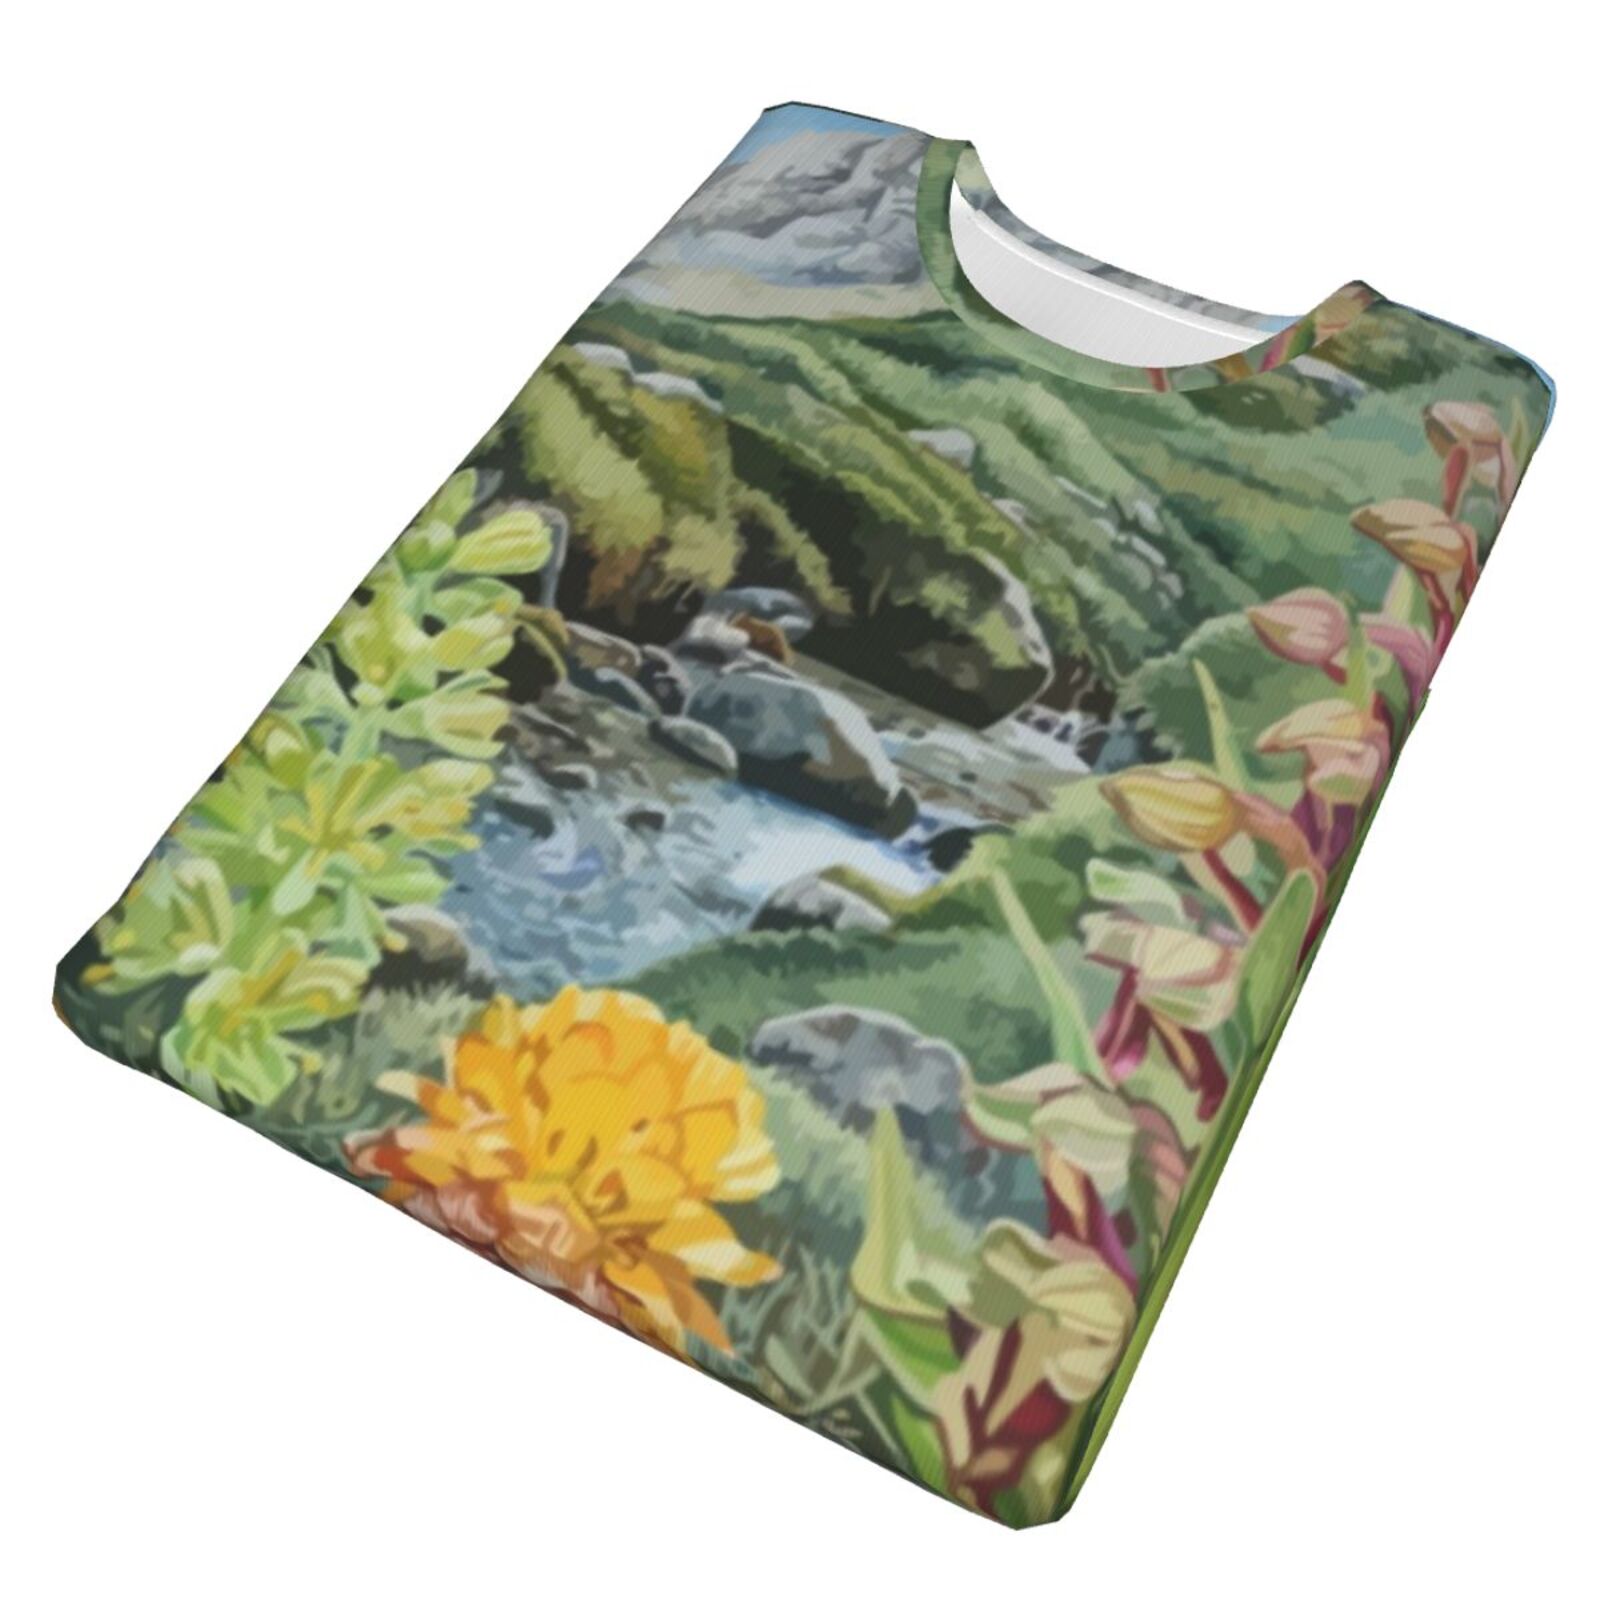 Leau Si Precieuse Composition Malerelementer Klassisk T-skjorte